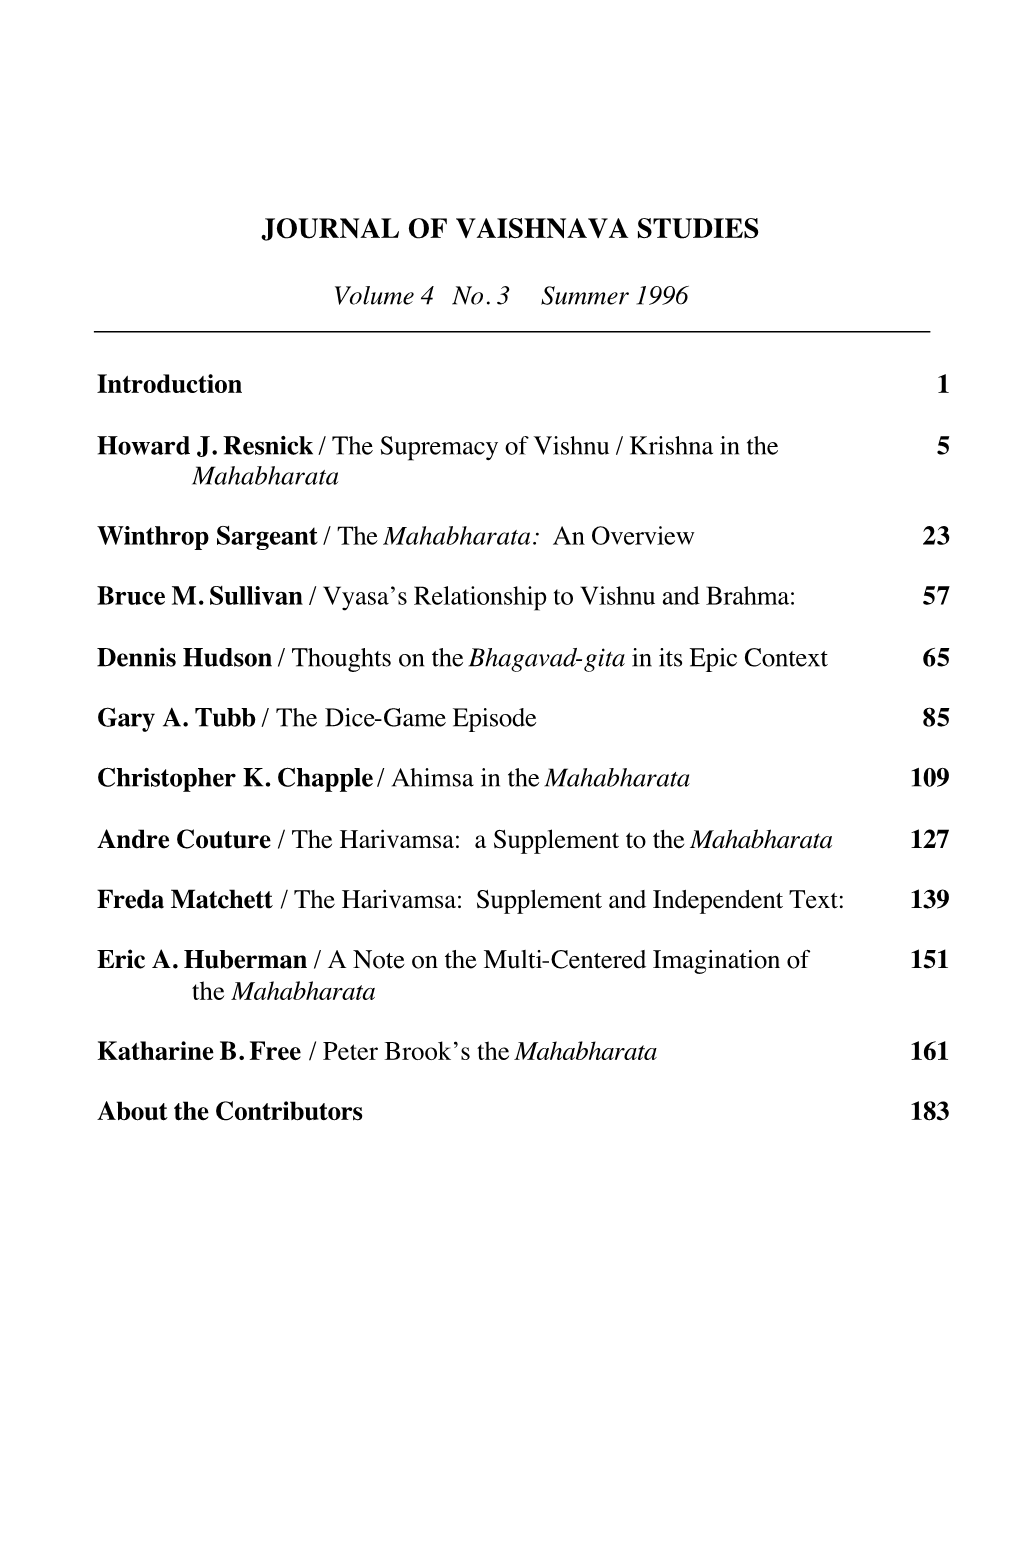 Journal of Vaishnava Studies